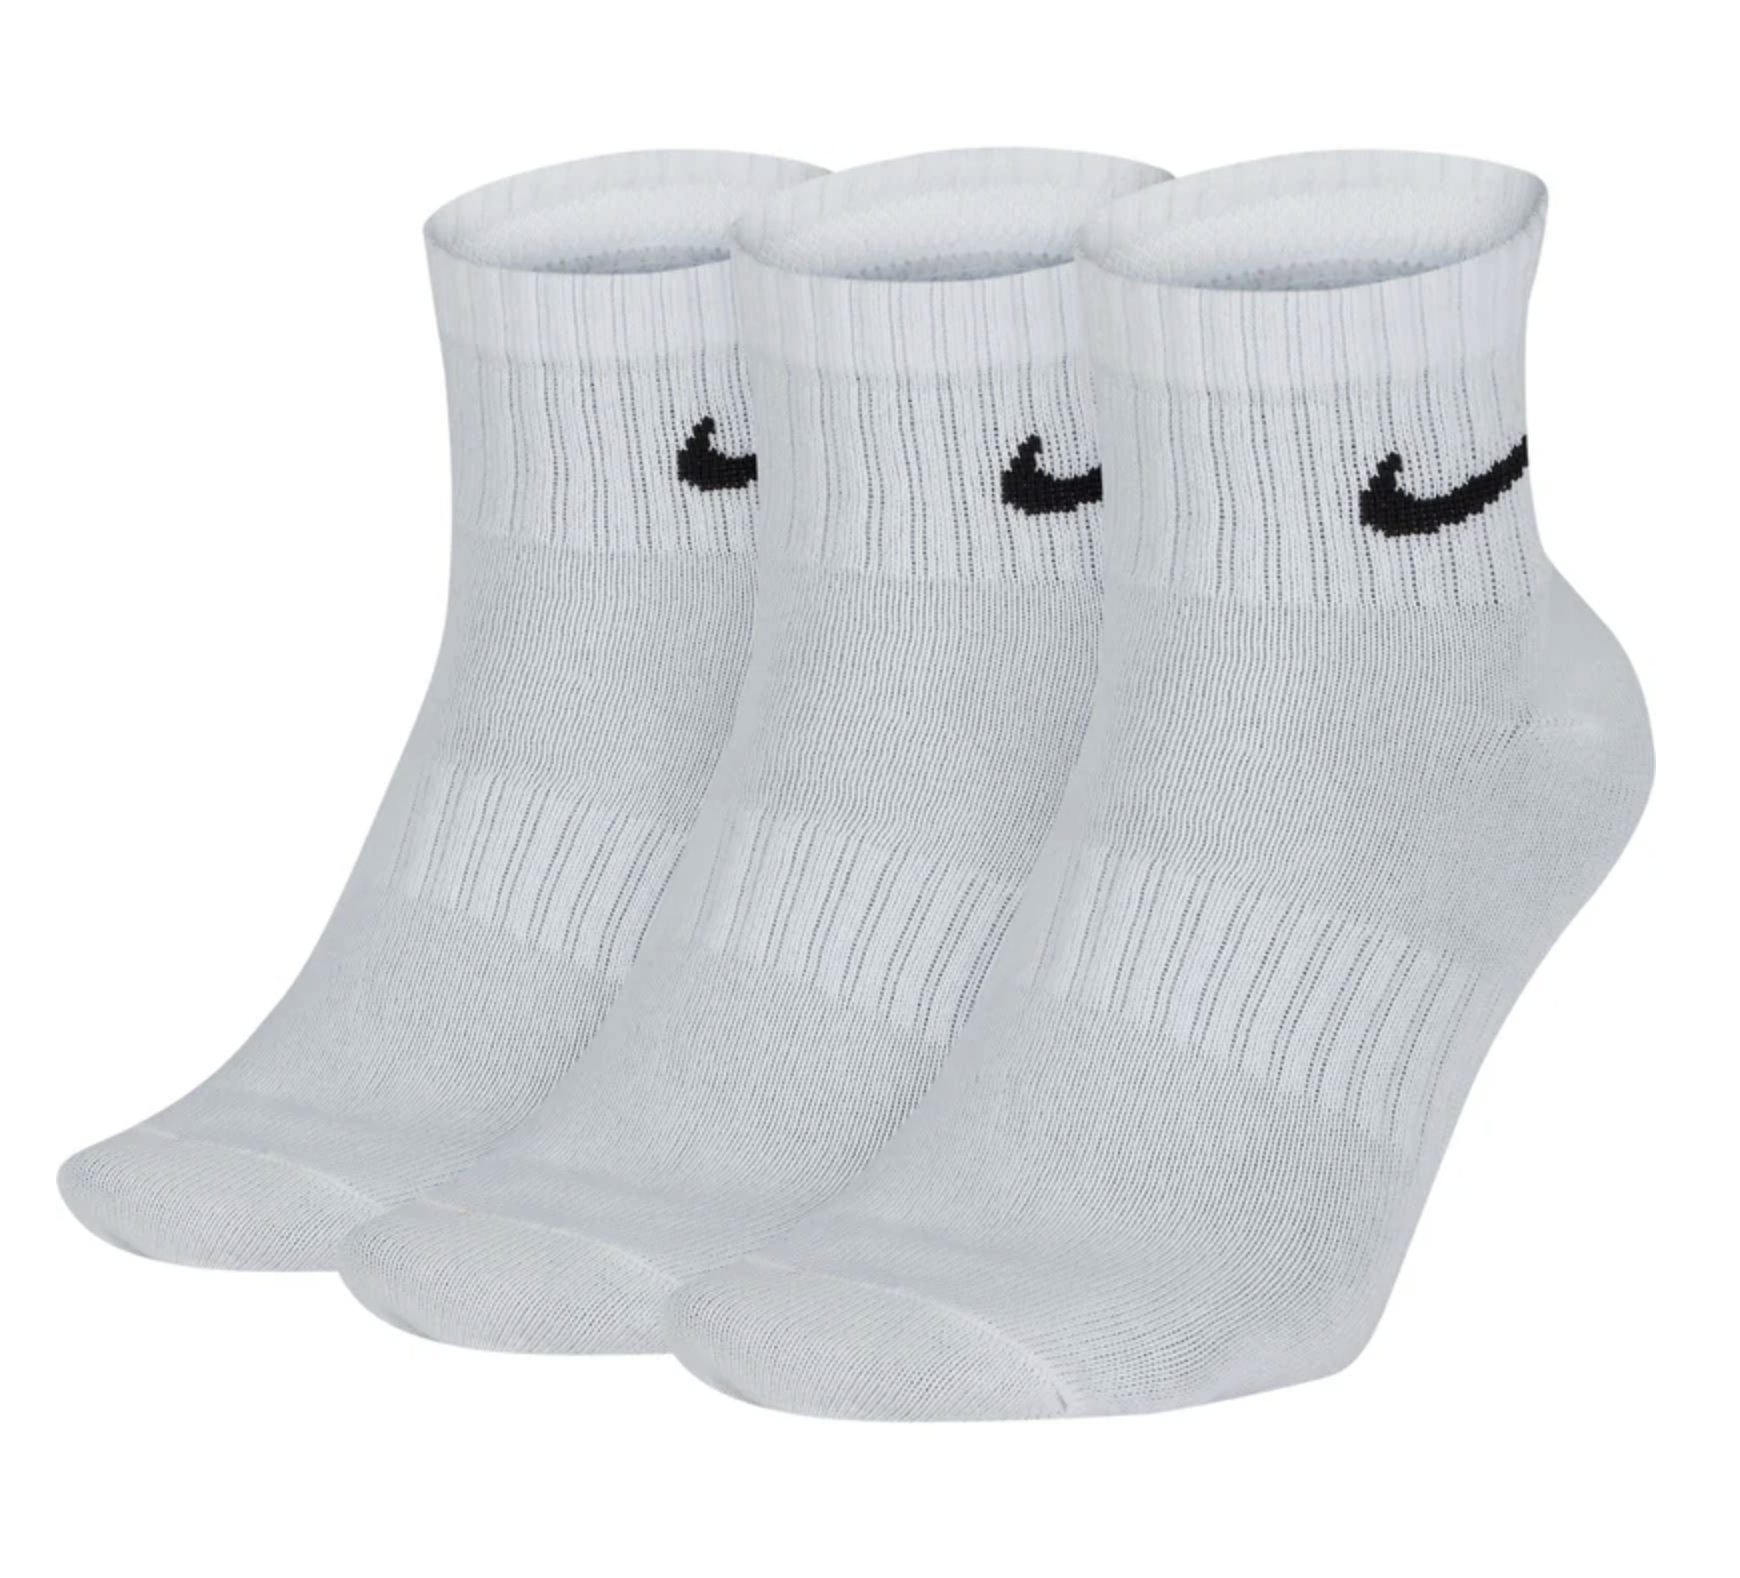 Nike Everyday Lightweight Ankle 3er Pack Socken white/black